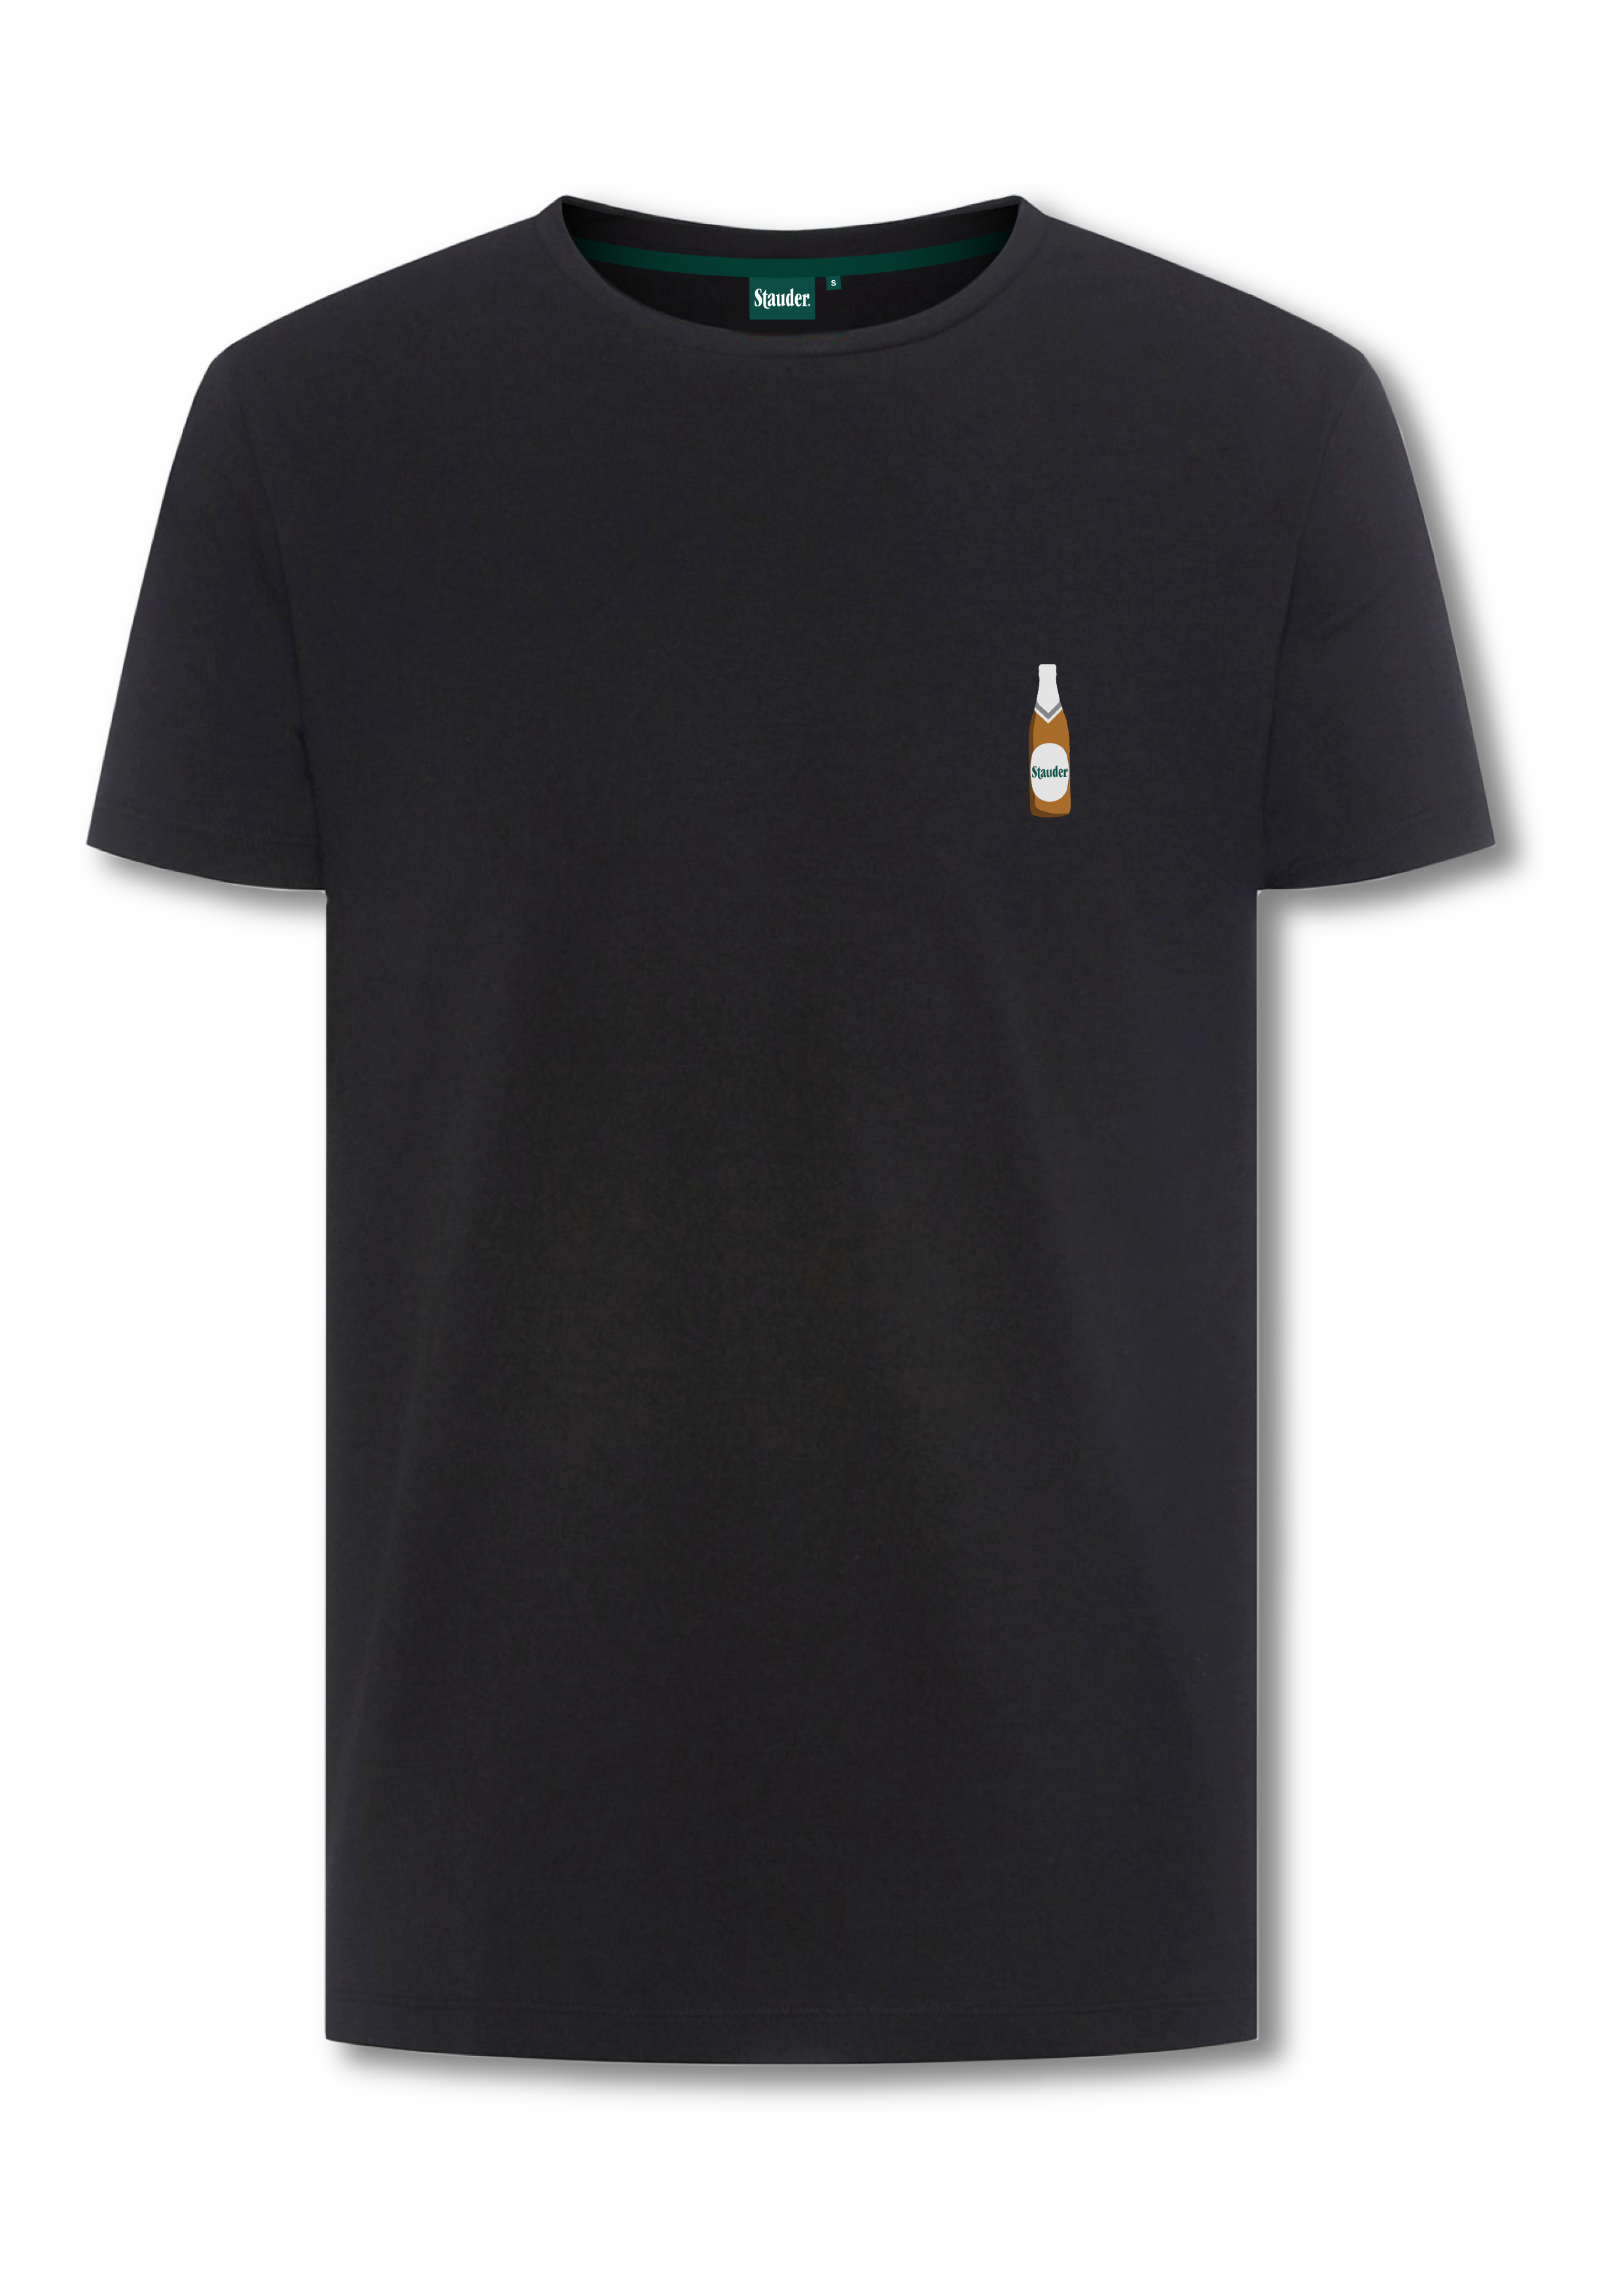 Stauder T-Shirt mit Stick "Flasche" - Erhältlich ab Ende Mai